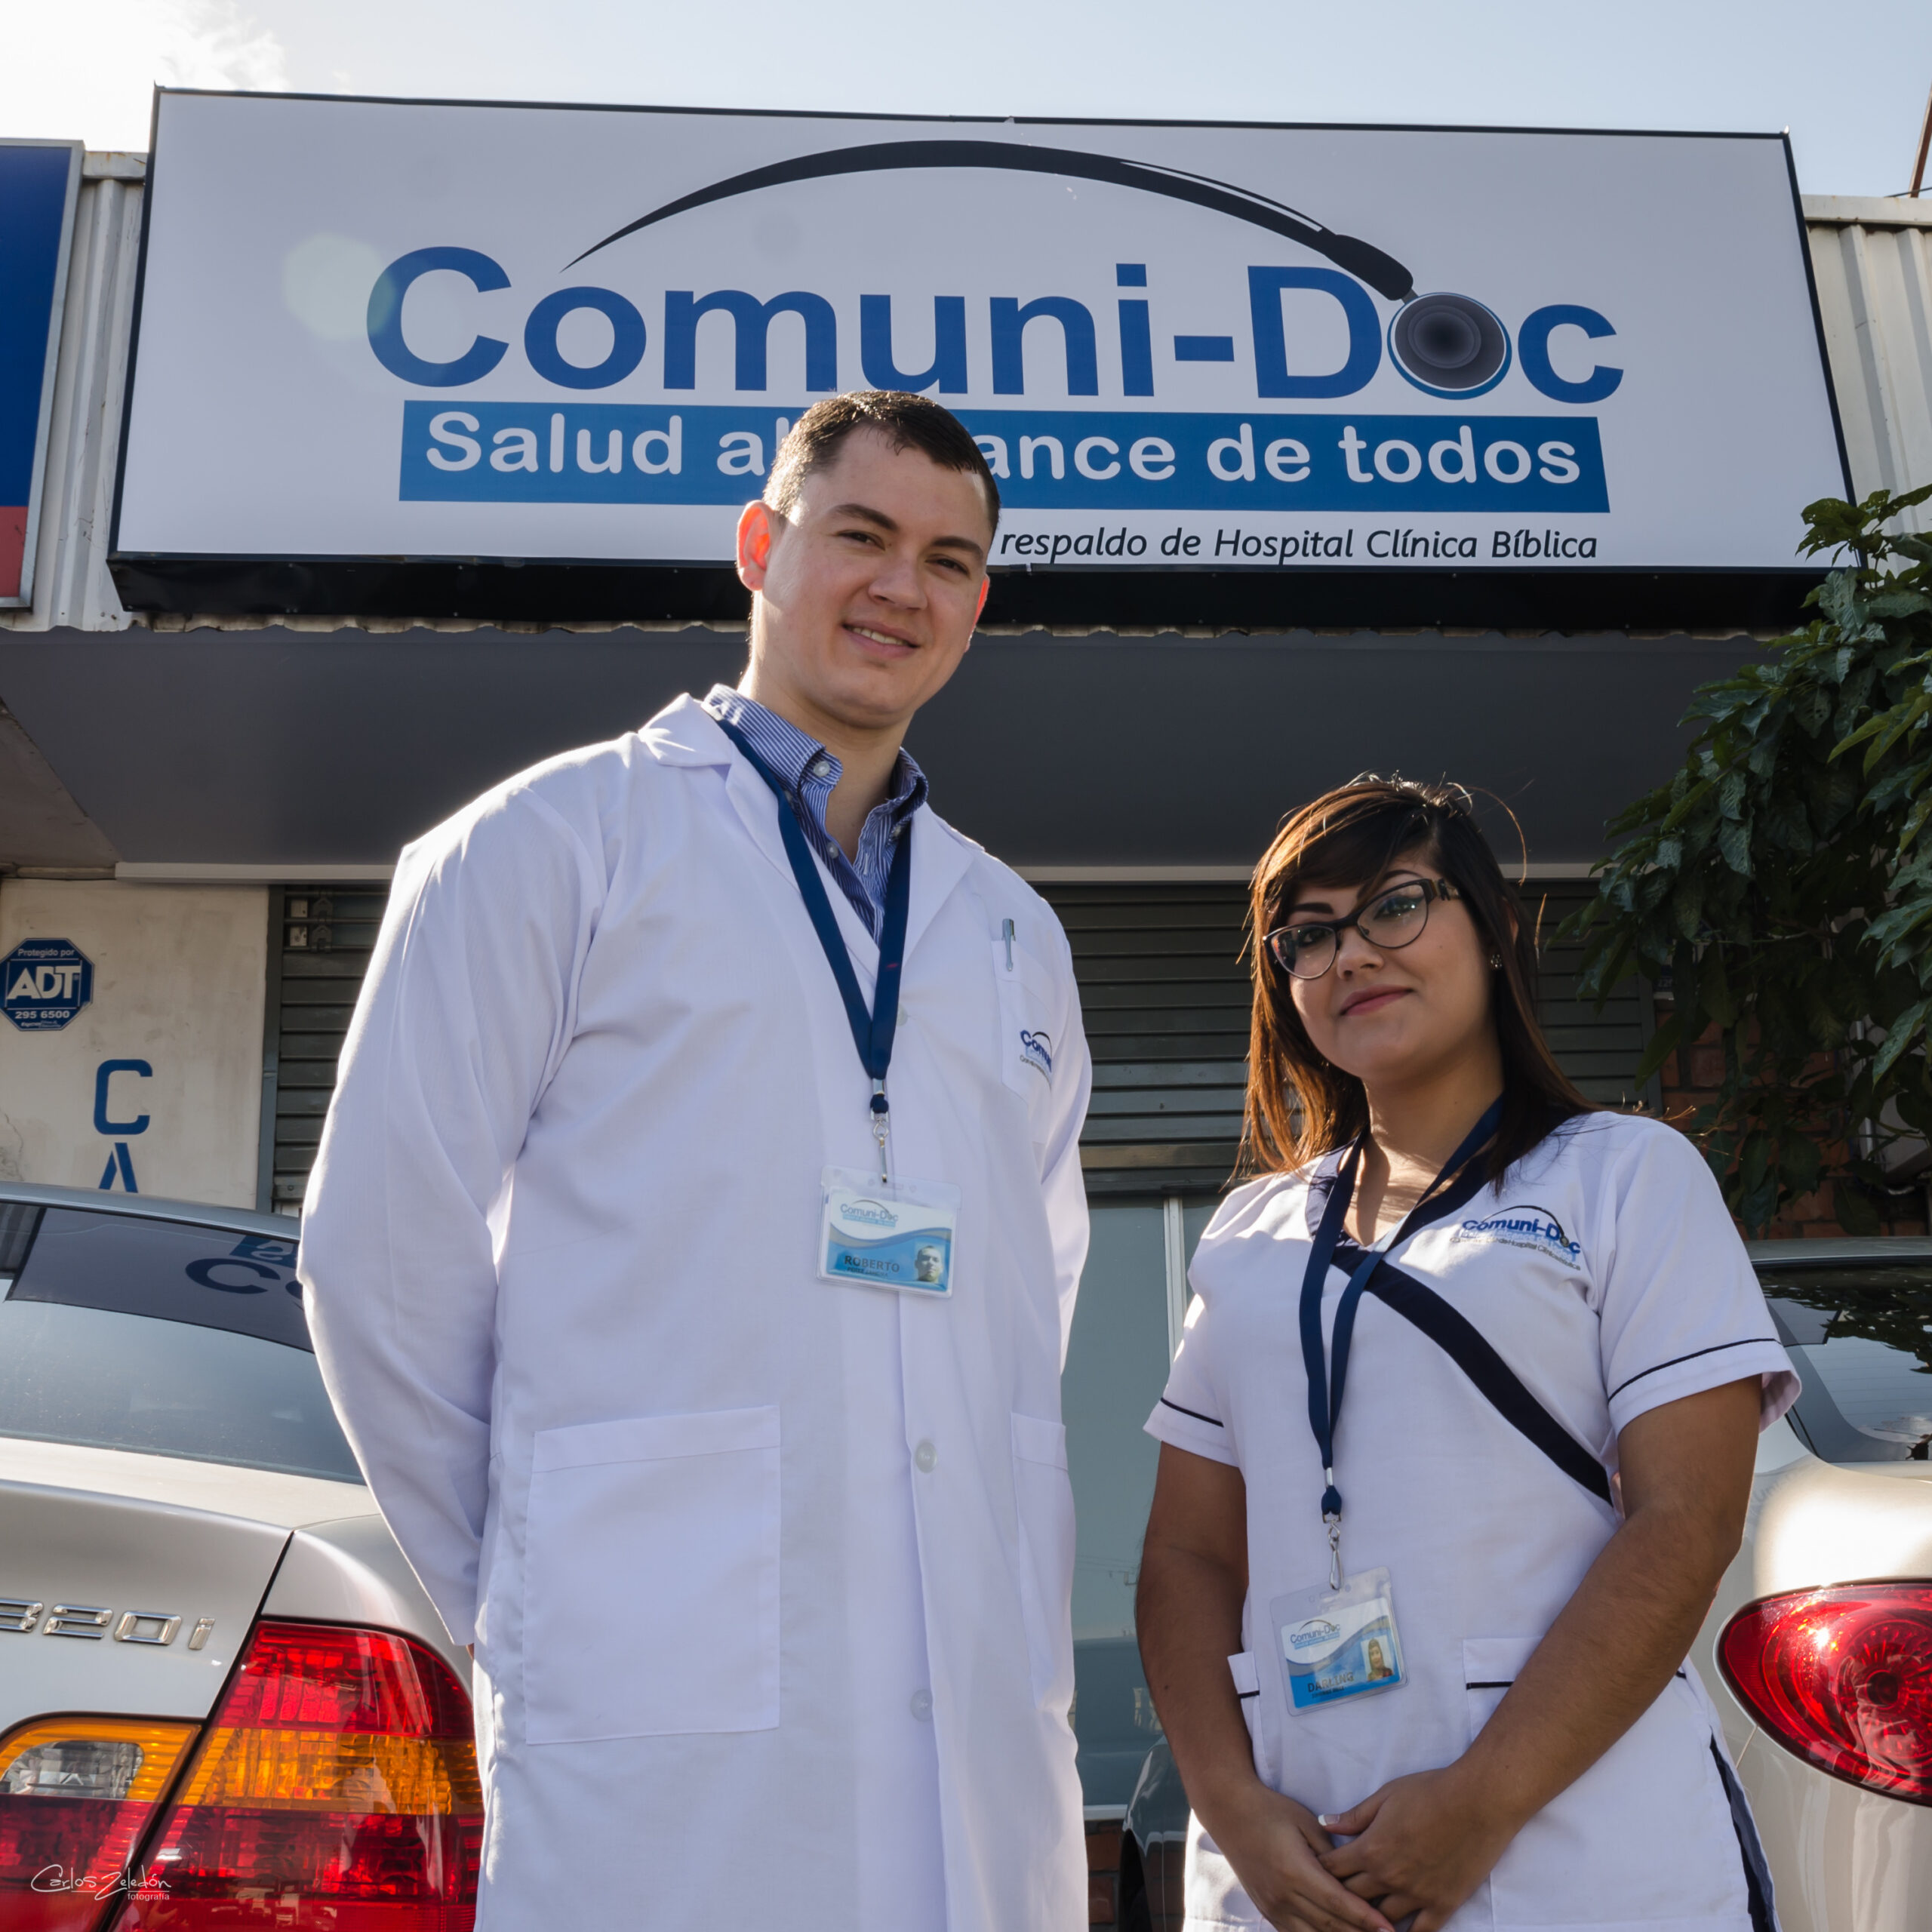 Comuni-Doc nueva oferta de medicina privada en Costa Rica